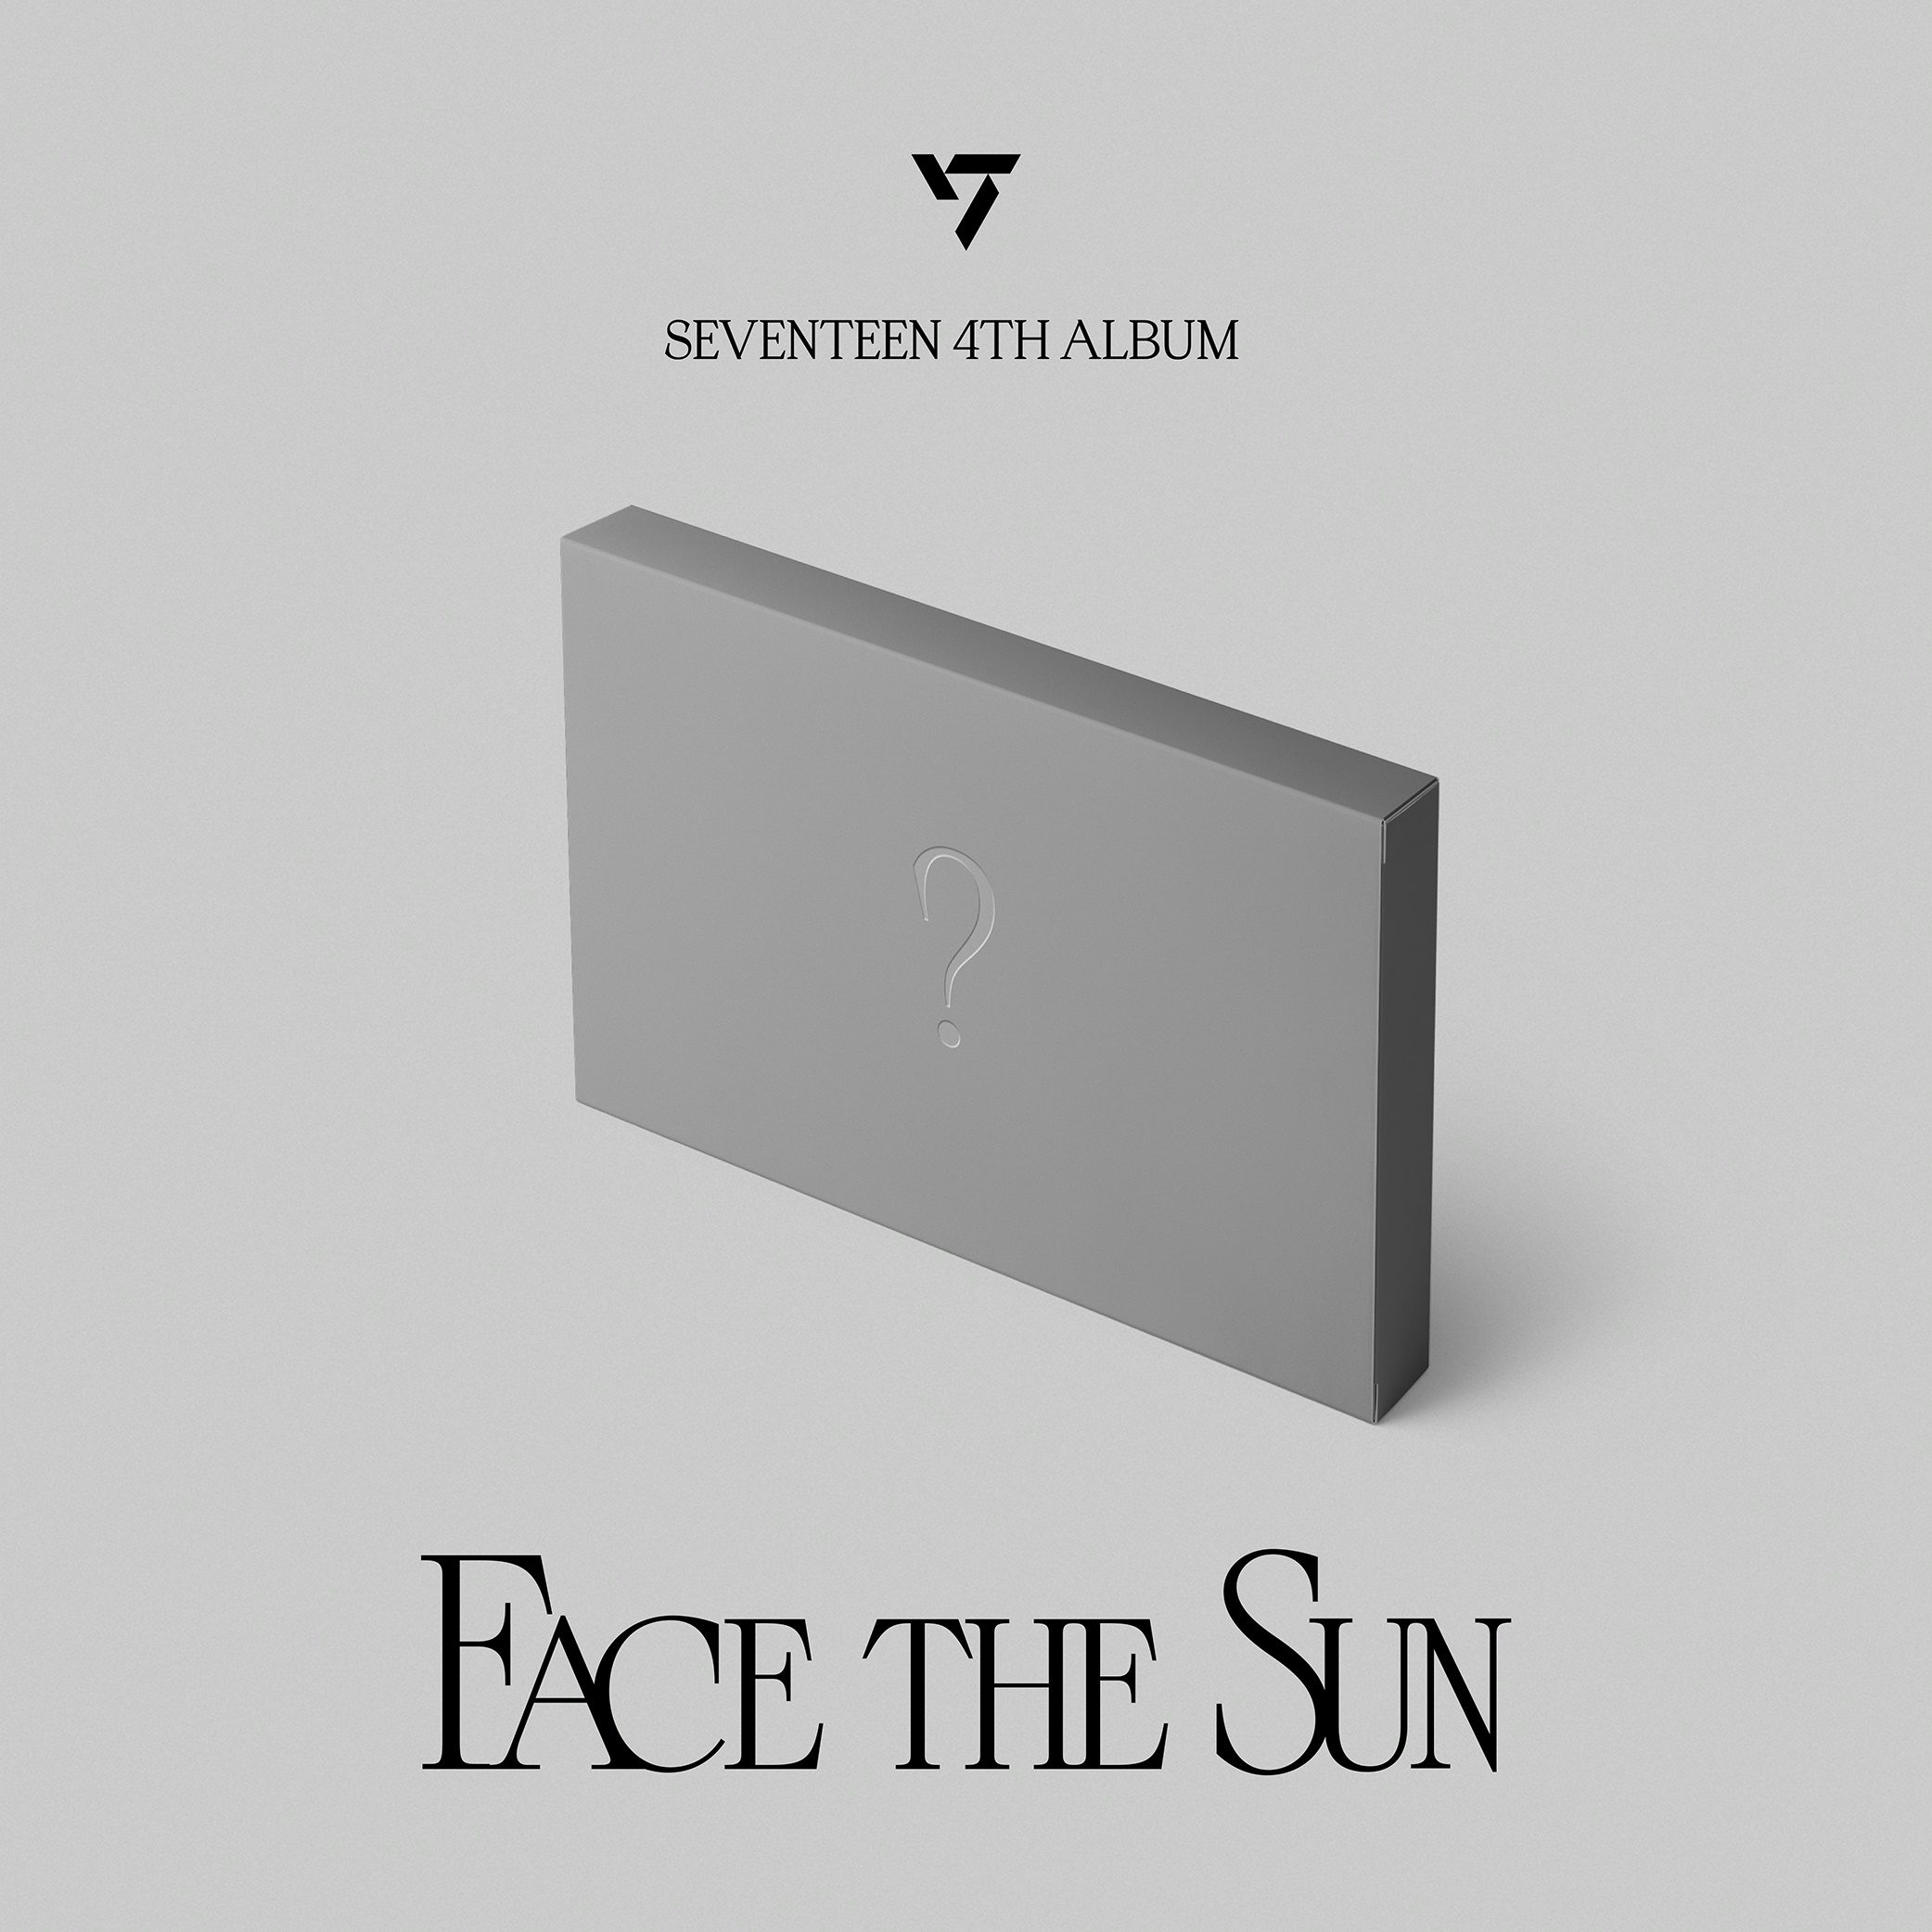 FACE THE SUN: SEVENTEEN 4TH ALBUM - EP.2 SHADOW CD